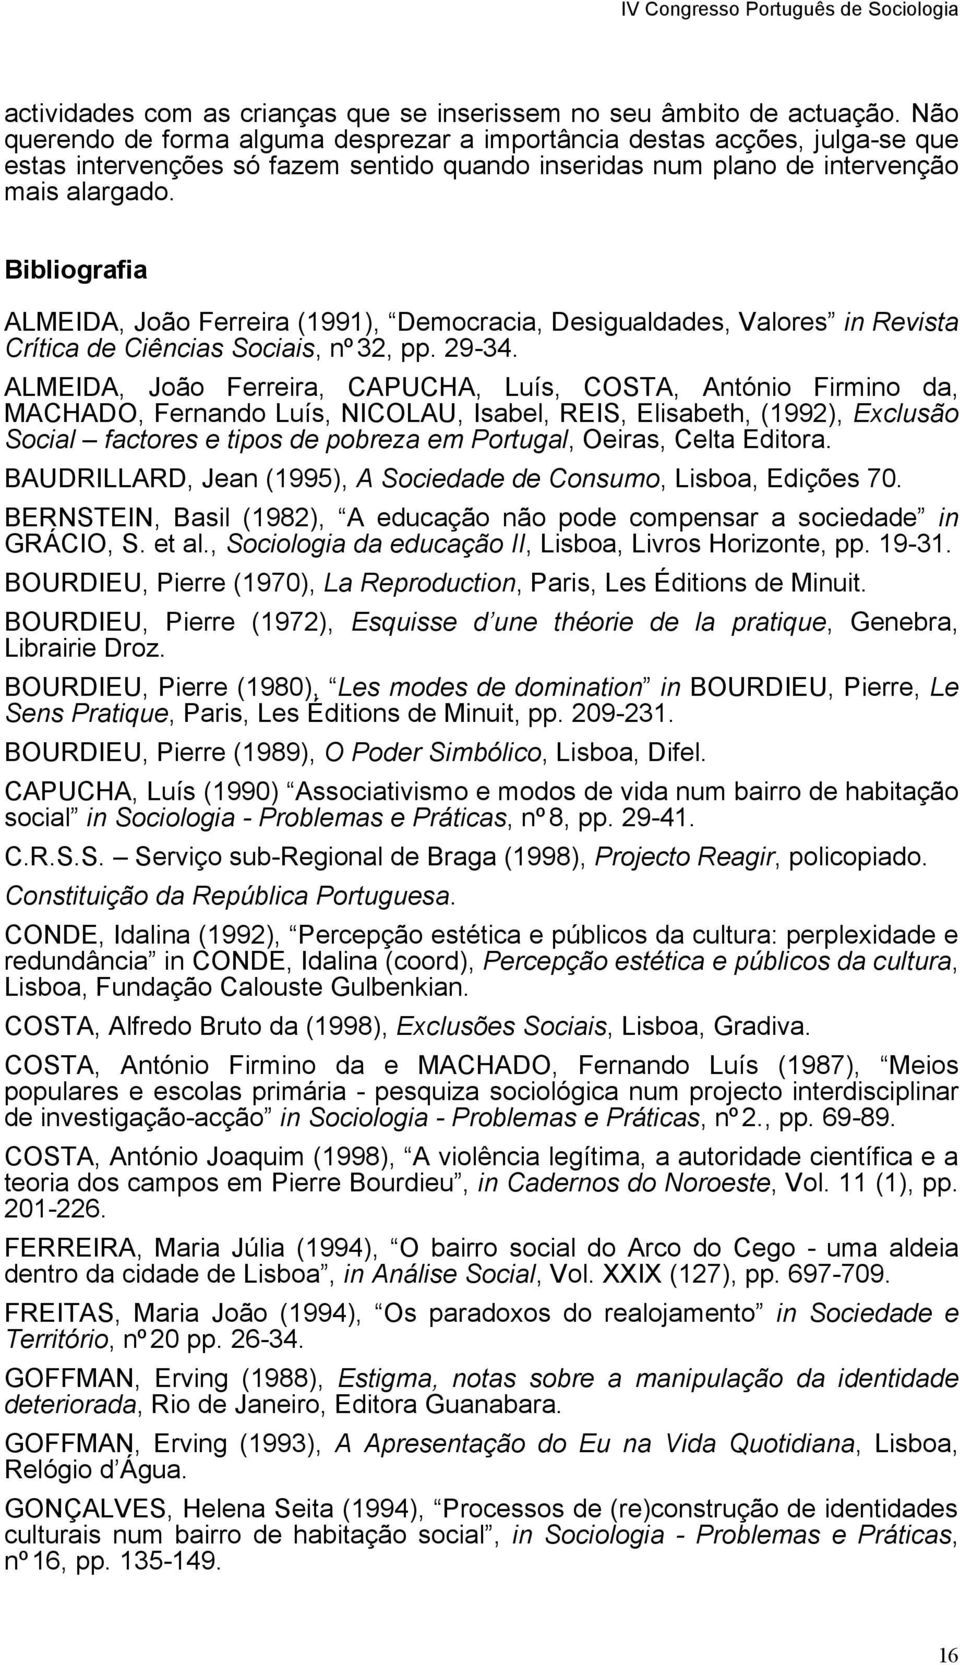 Bibliografia ALMEIDA, João Ferreira (1991), Democracia, Desigualdades, Valores in Revista Crítica de Ciências Sociais, nº32, pp. 29-34.